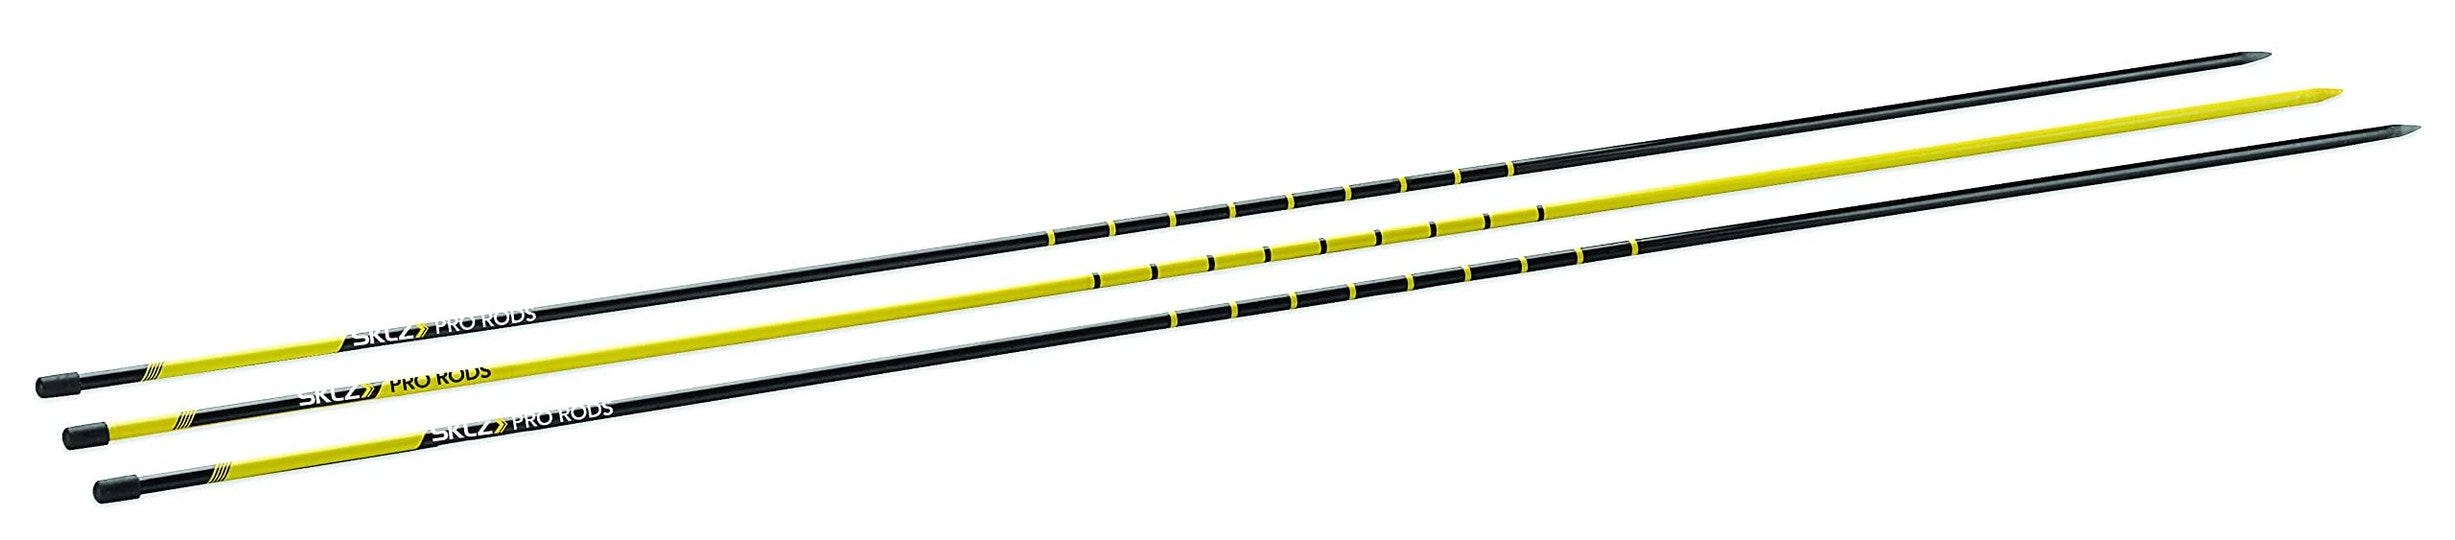 sklz-golf-alignment-sticks-training-aid-with-3-sticks-1